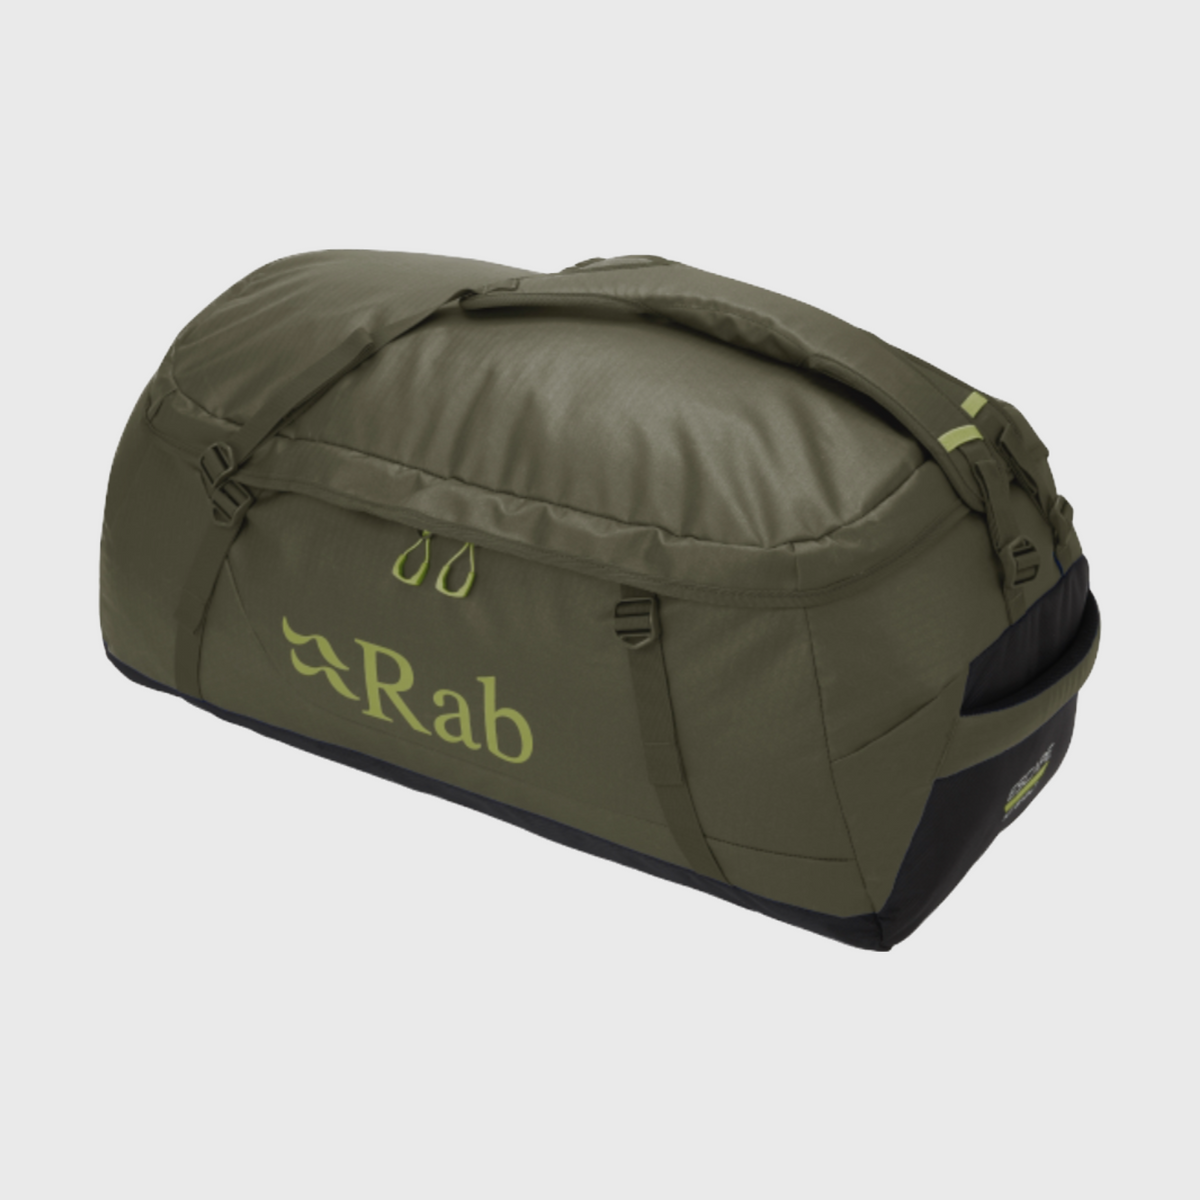 Rab ラブ / Escape Kit Bag LT 70 エスケープキットバック (ダッフル